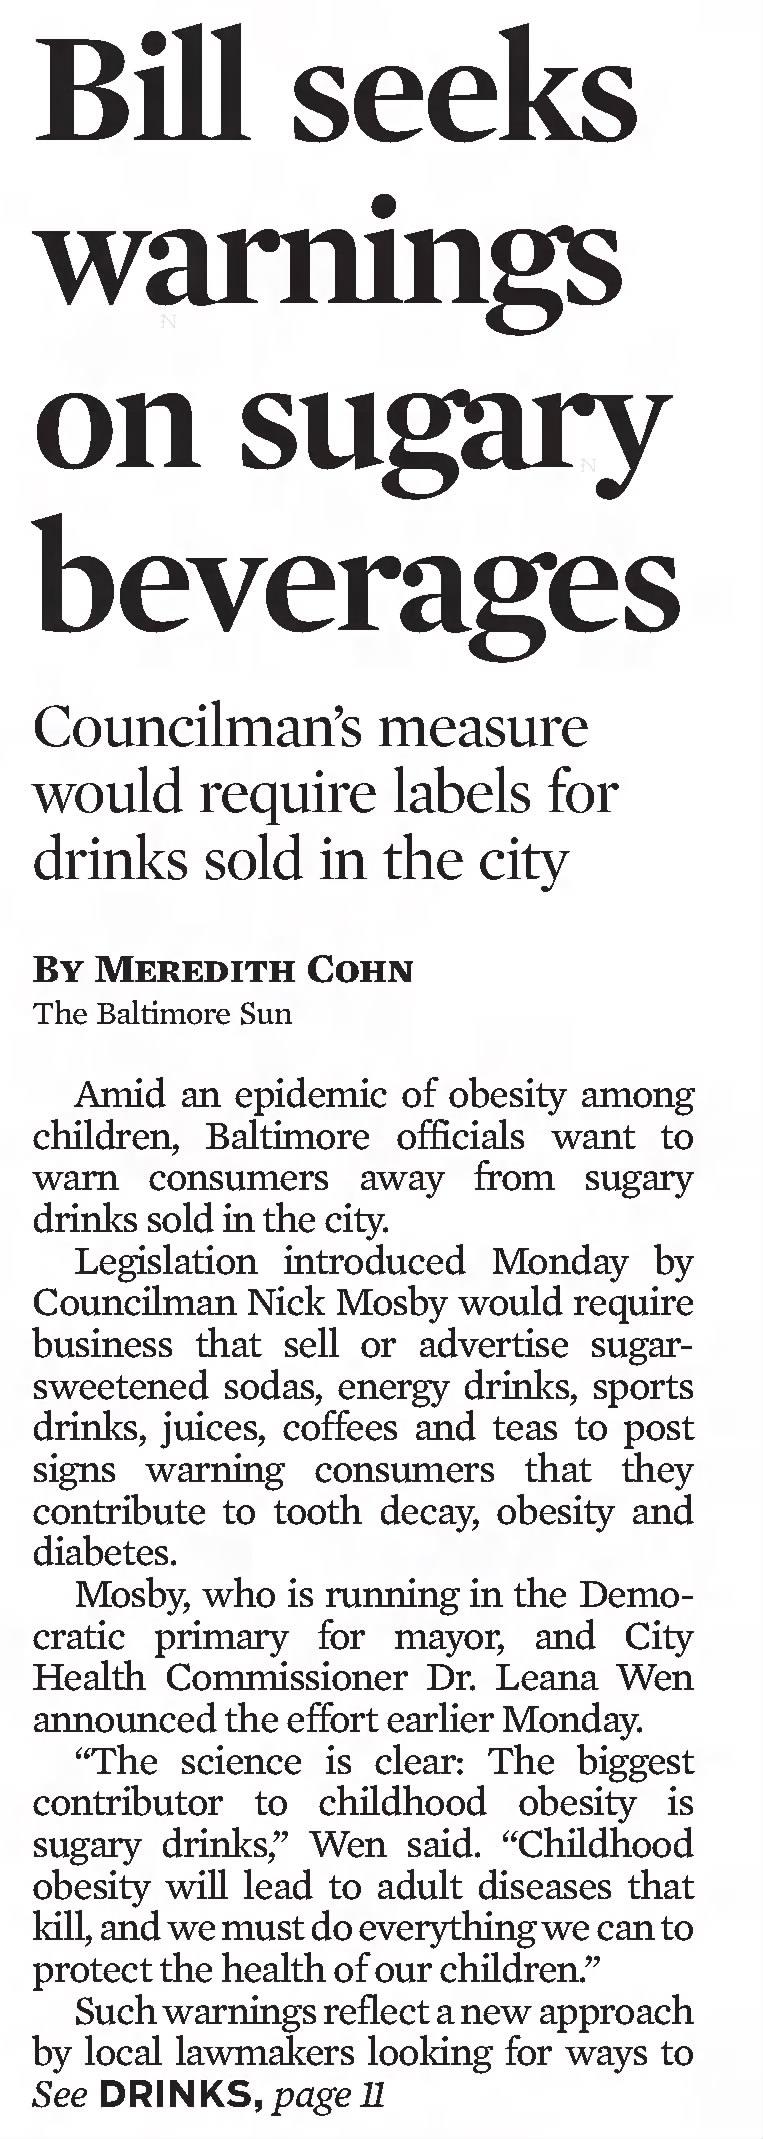 Bill seeks warnings on sugary beverages